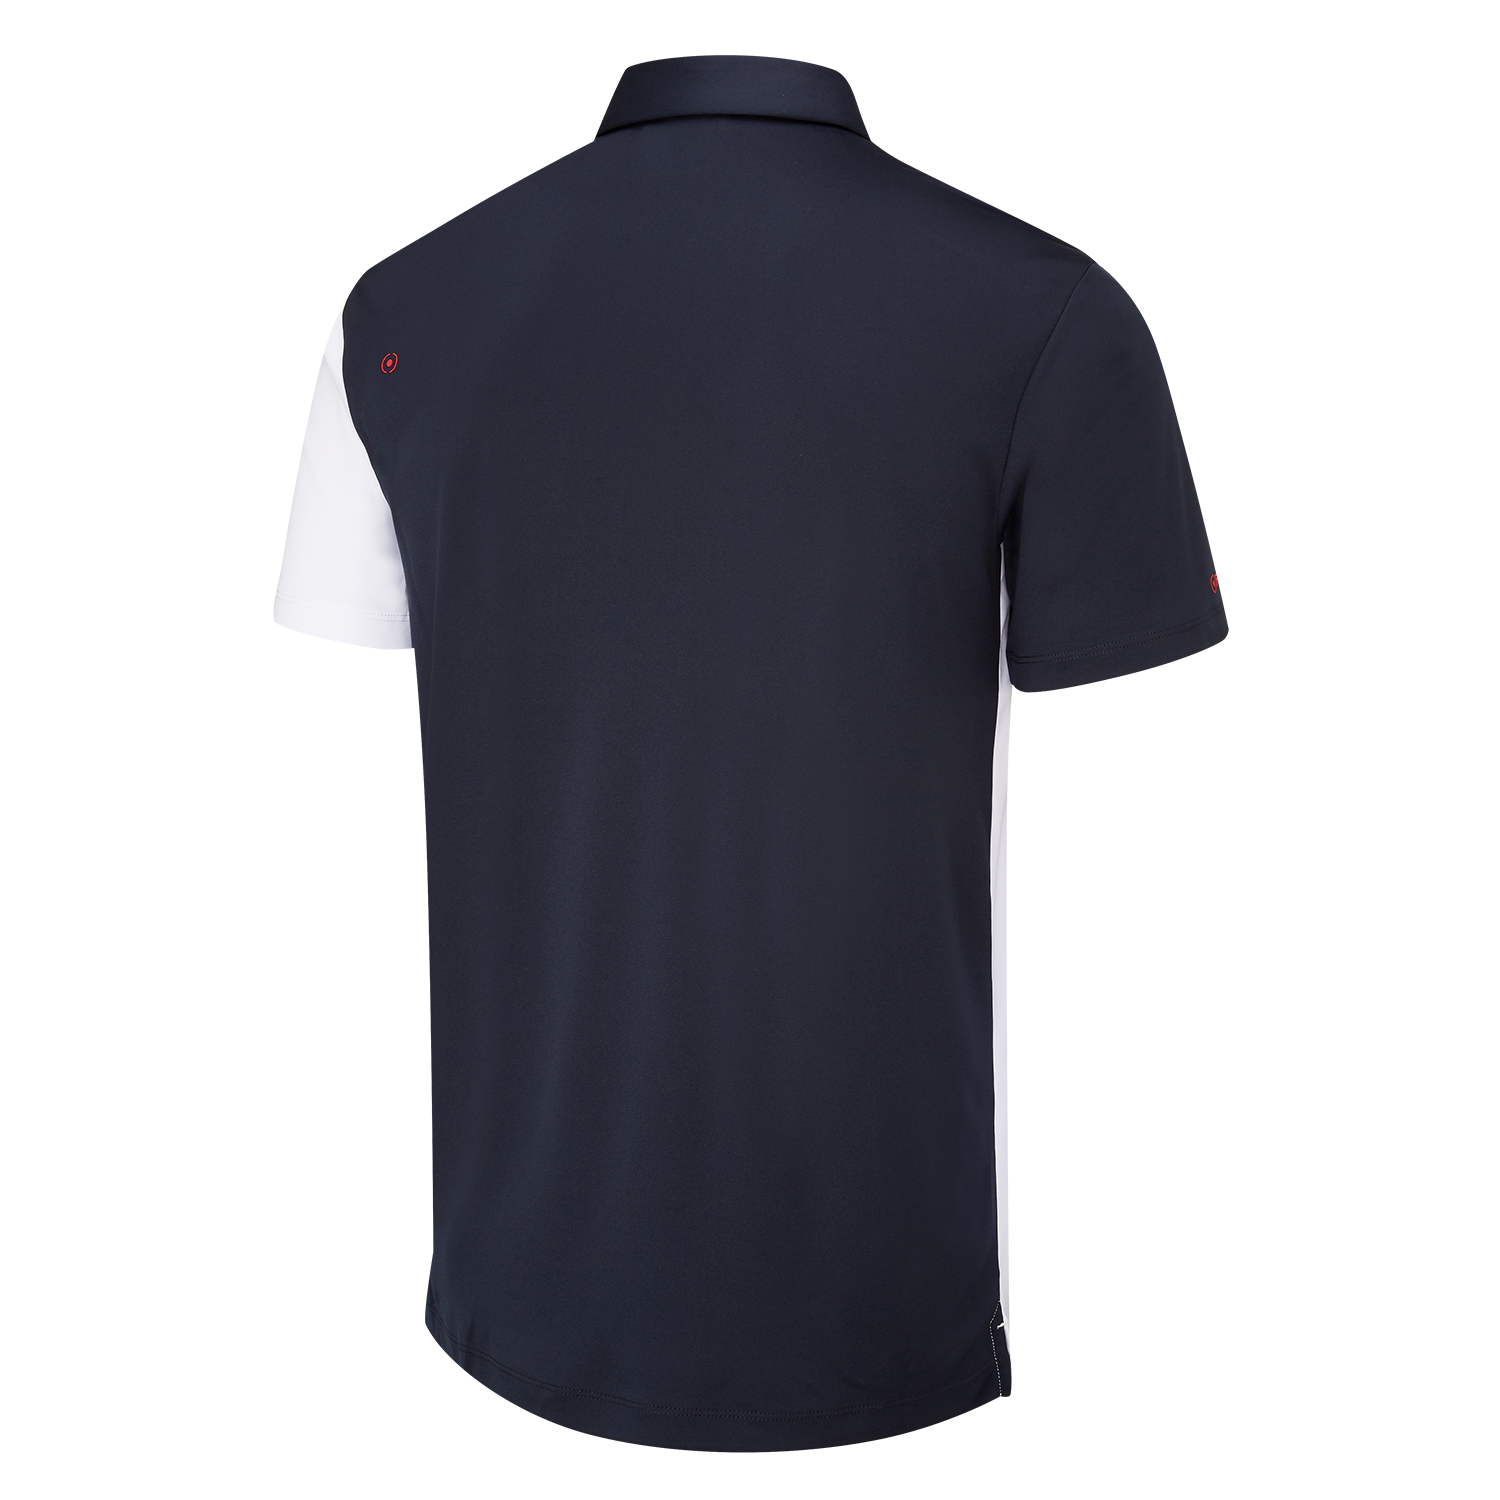 PING Mack Golf Polo Shirt White/Navy Multi | Scottsdale Golf